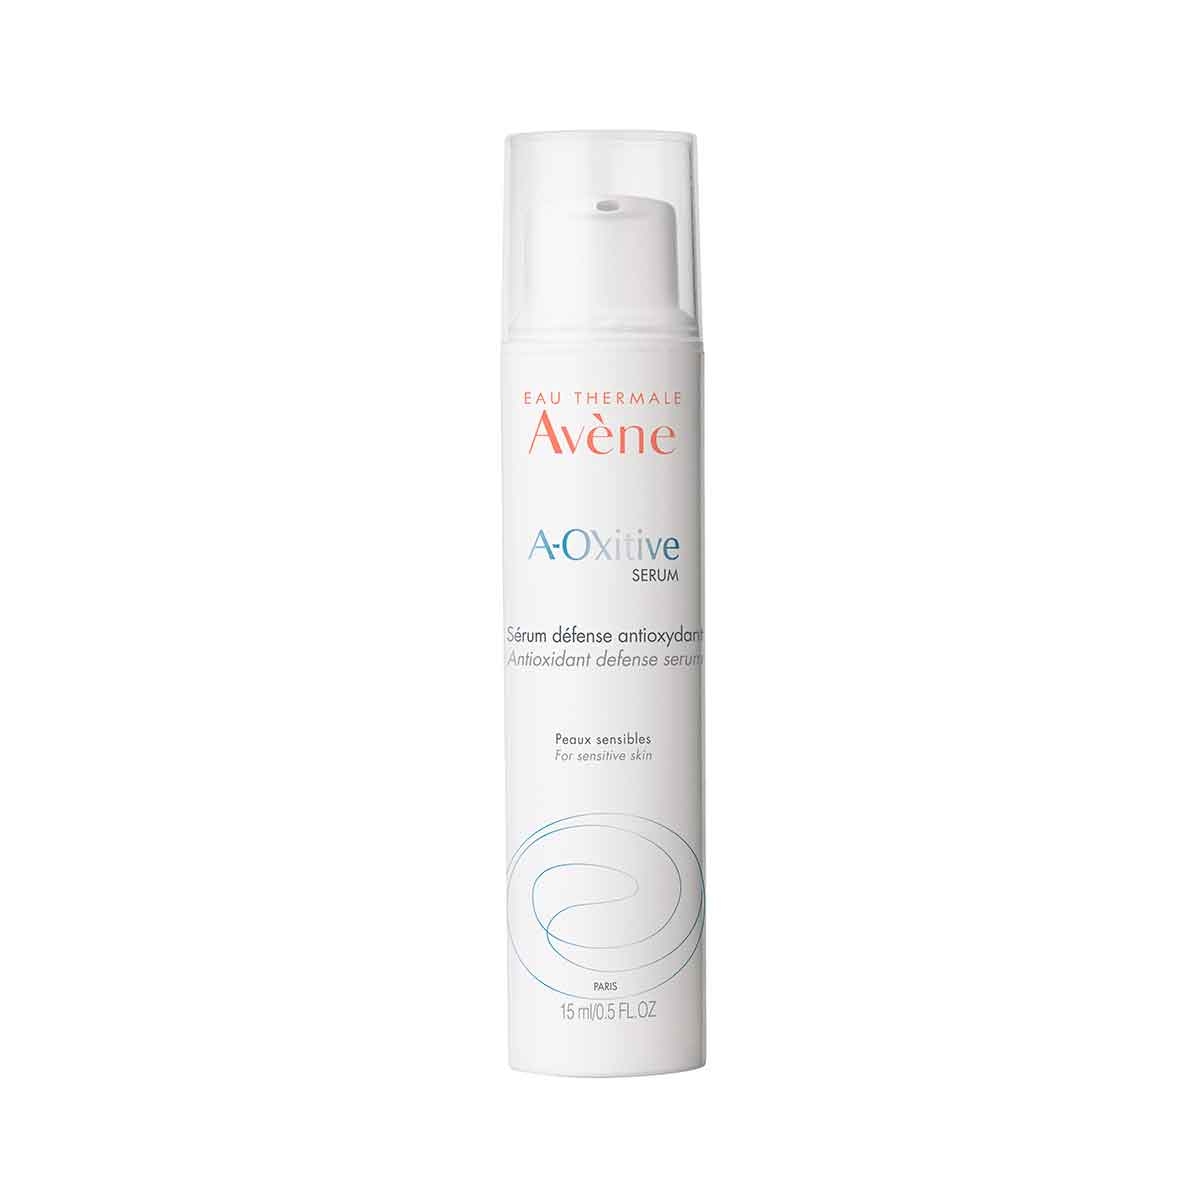 Sérum Facial Antioxidante Avène A-Oxitive com 15ml Avene 15ml